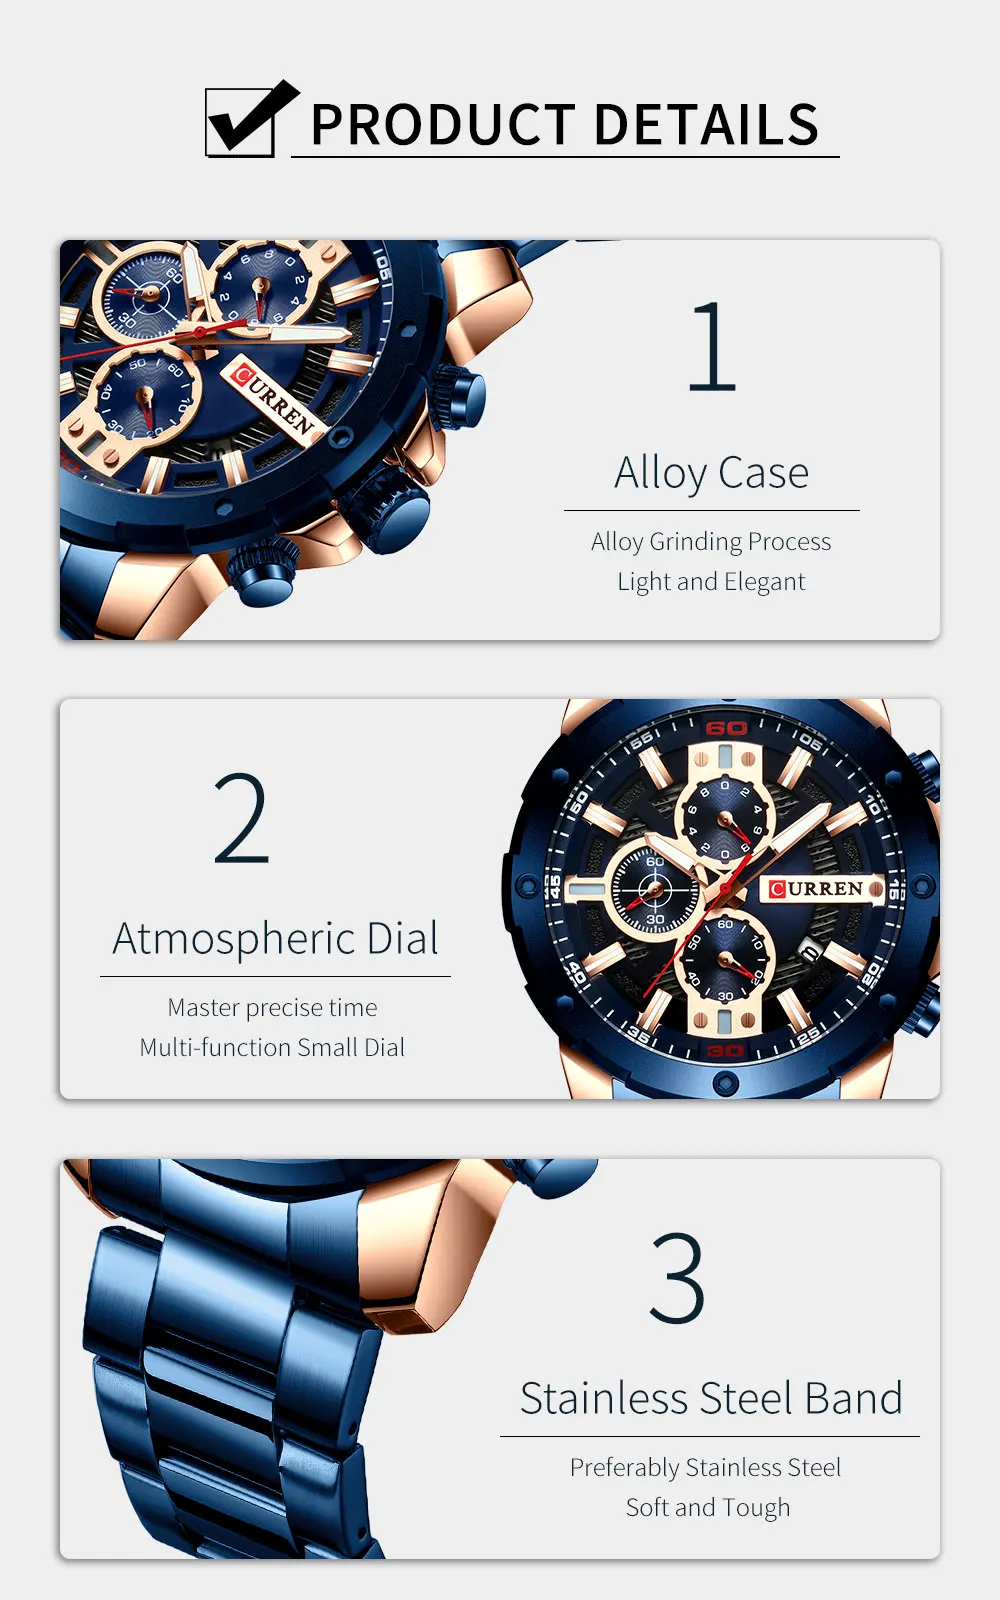 Новые кварцевые фирмы carren светящиеся мужские наручные часы модные спортивные часы из нержавеющей стали 3ATM водонепроницаемые наручные часы хронограф часы